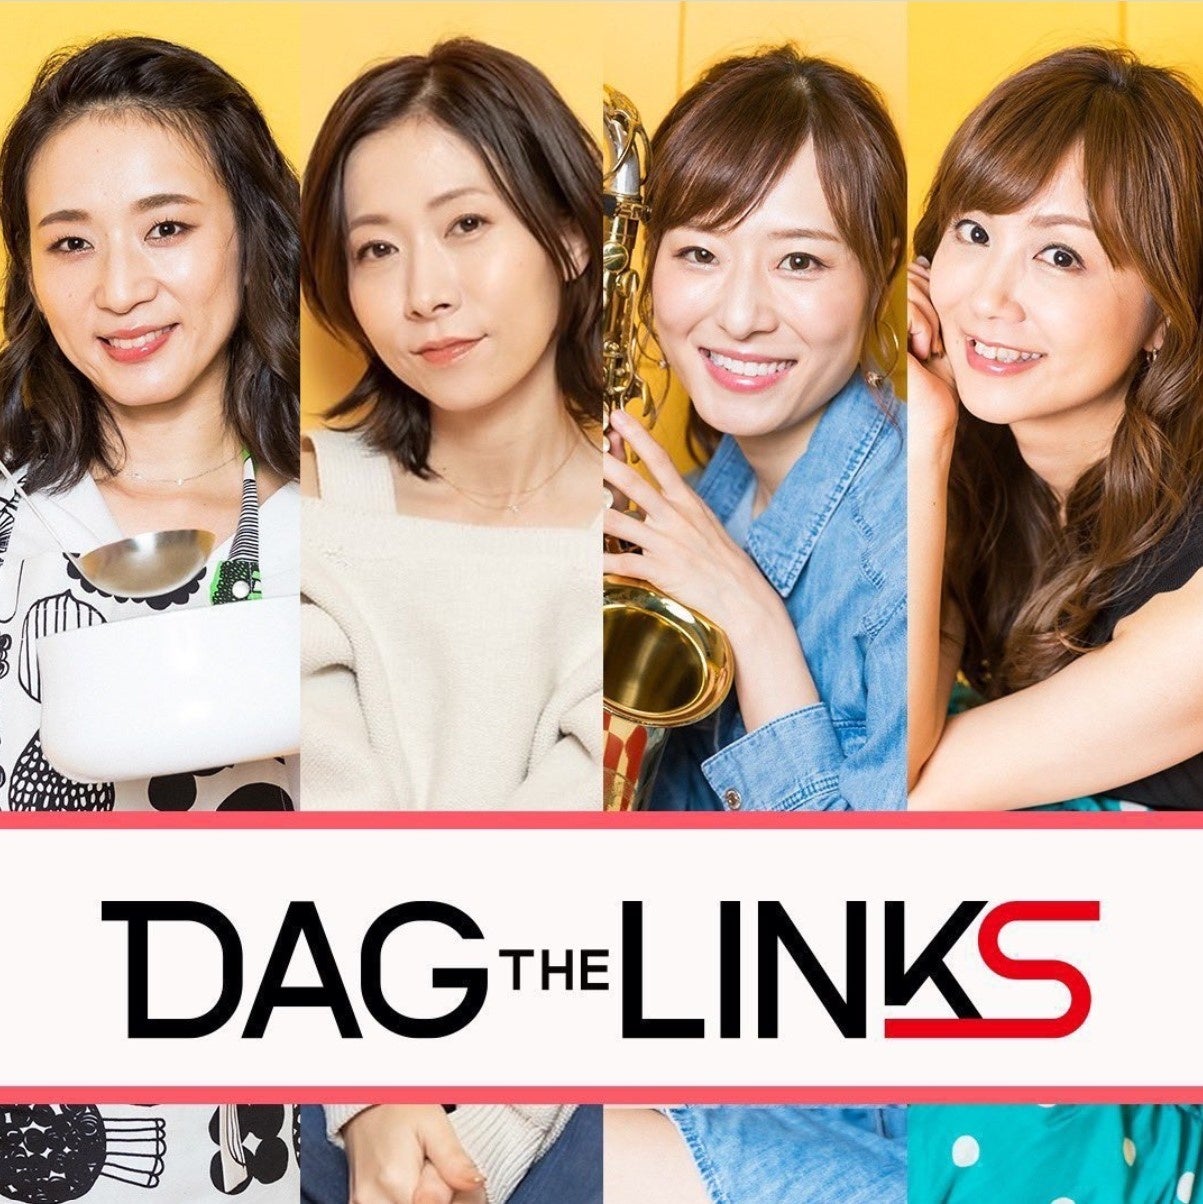 渋谷クロスFM 5月視聴ランキングで6位を獲得 ライバー事務所DAG「DAG the LINKS」